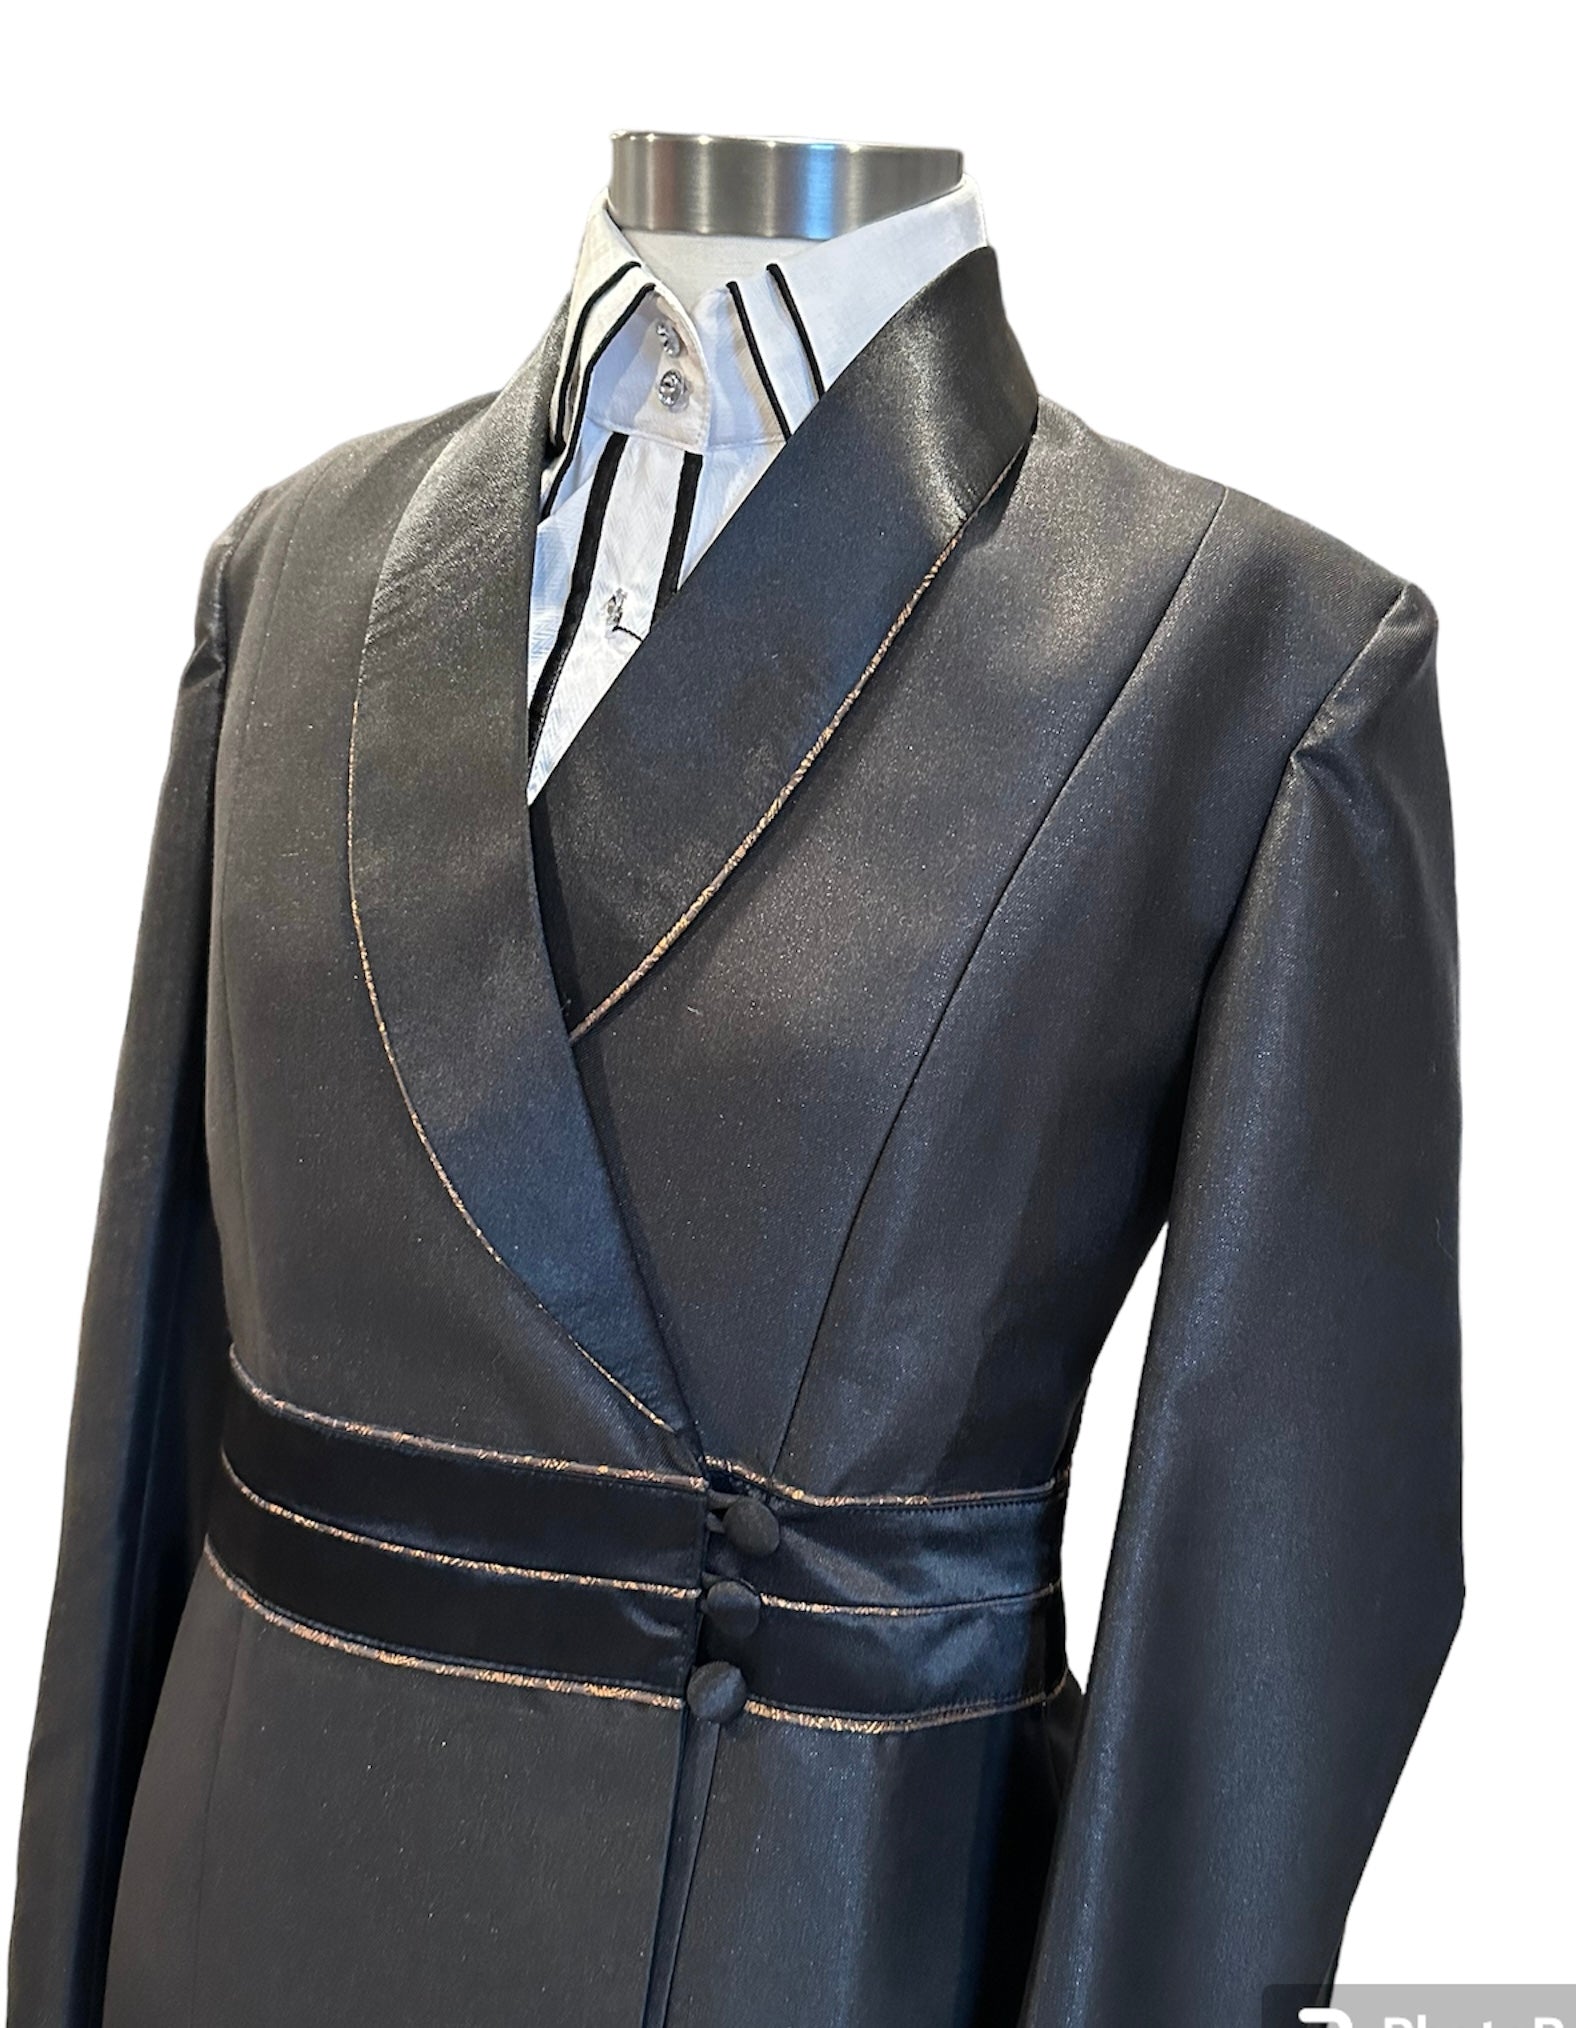 Western Showmanship Suit Black with bronze accents